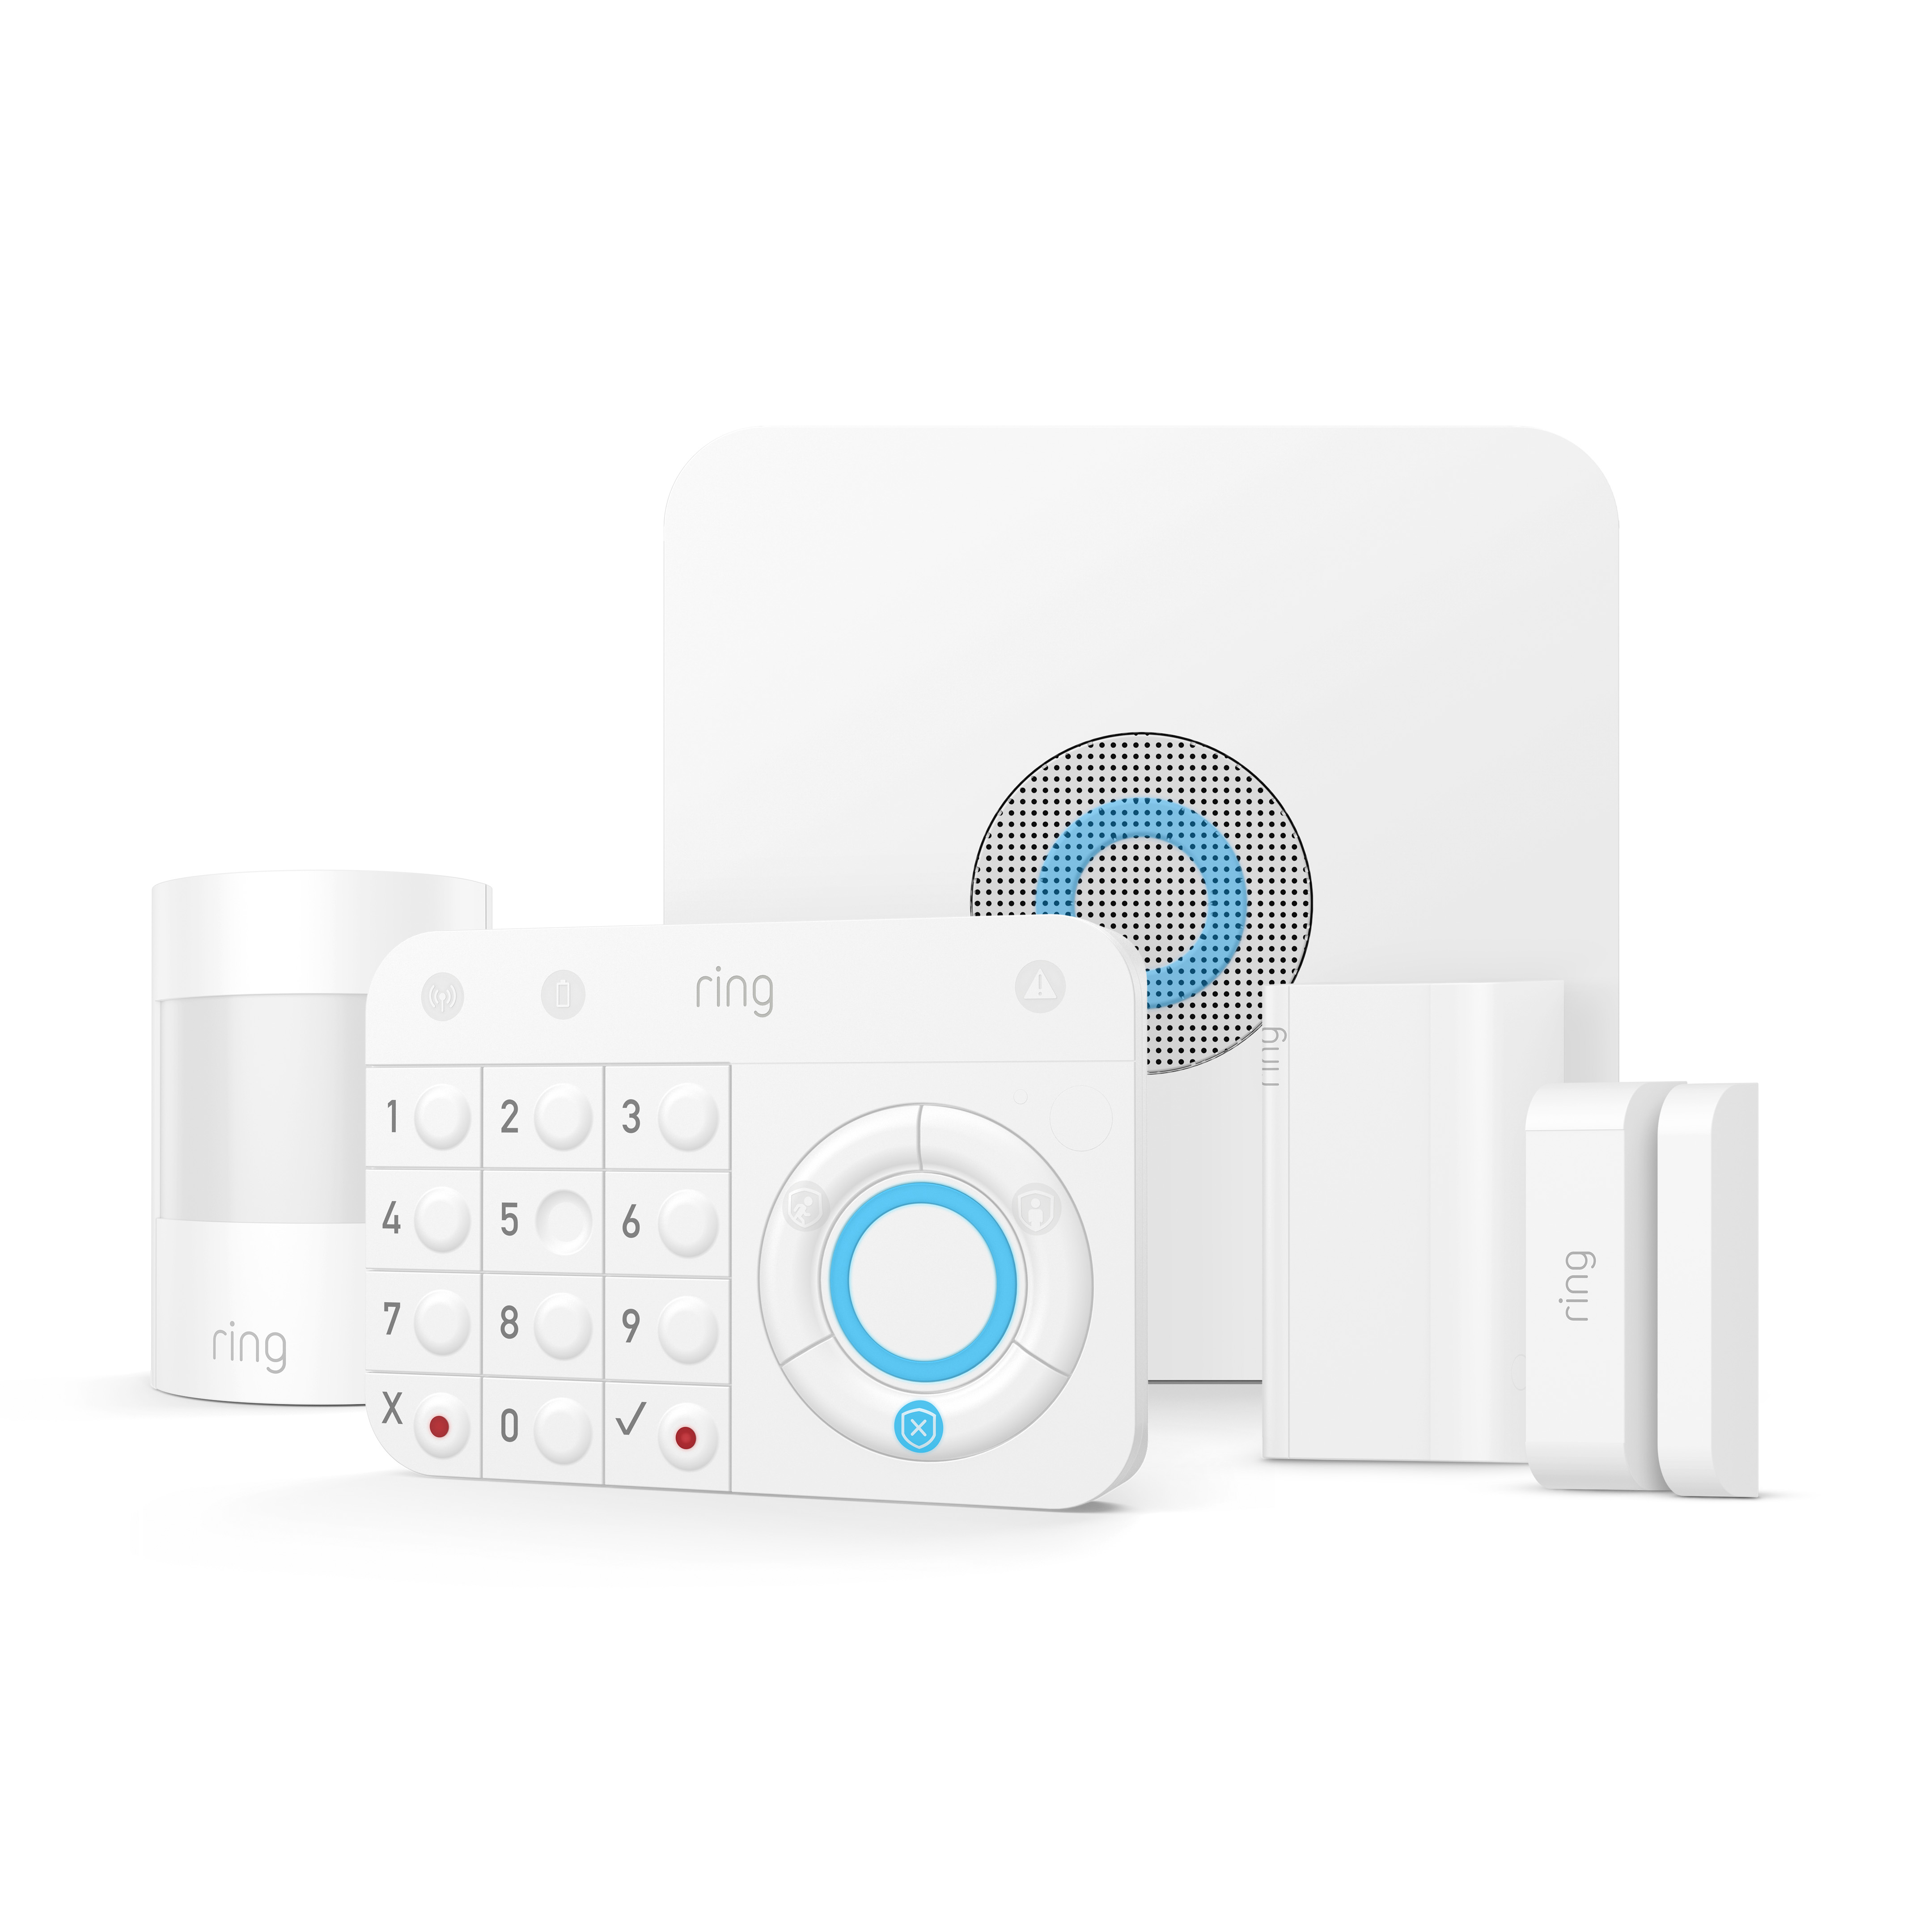 Ring dévoile son nouveau kit de sécurité connecté pour la maison : Ring Alarm